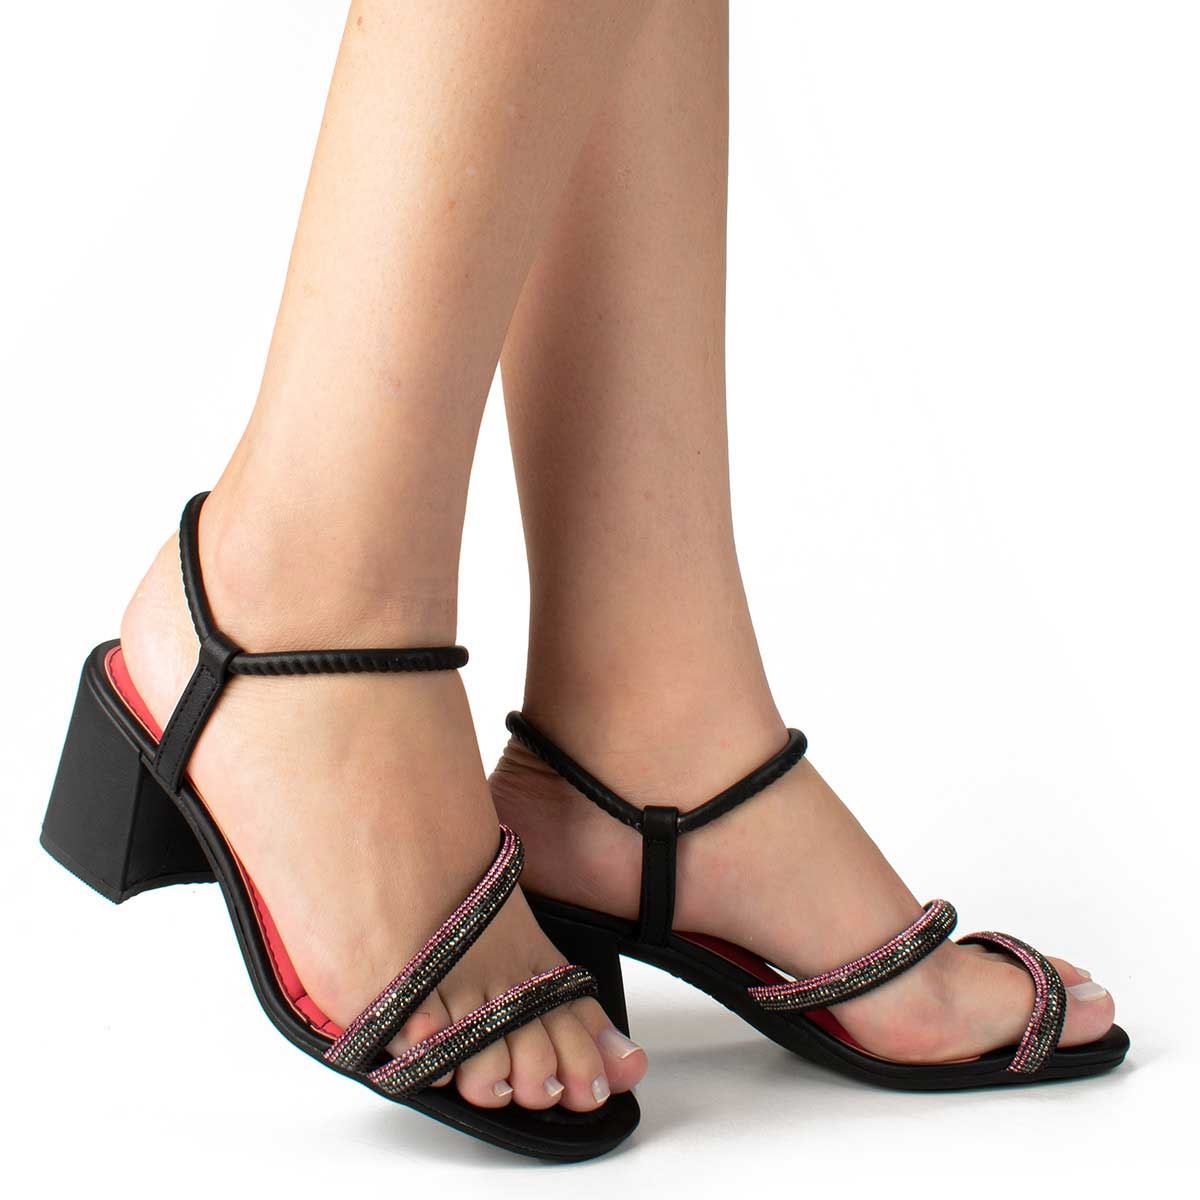 Sandália Feminina Dakota Salto Bloco Z9721 0005 - Preto (Koza Pewter) -  Calçados Online Sandálias, Sapatos e Botas Femininas